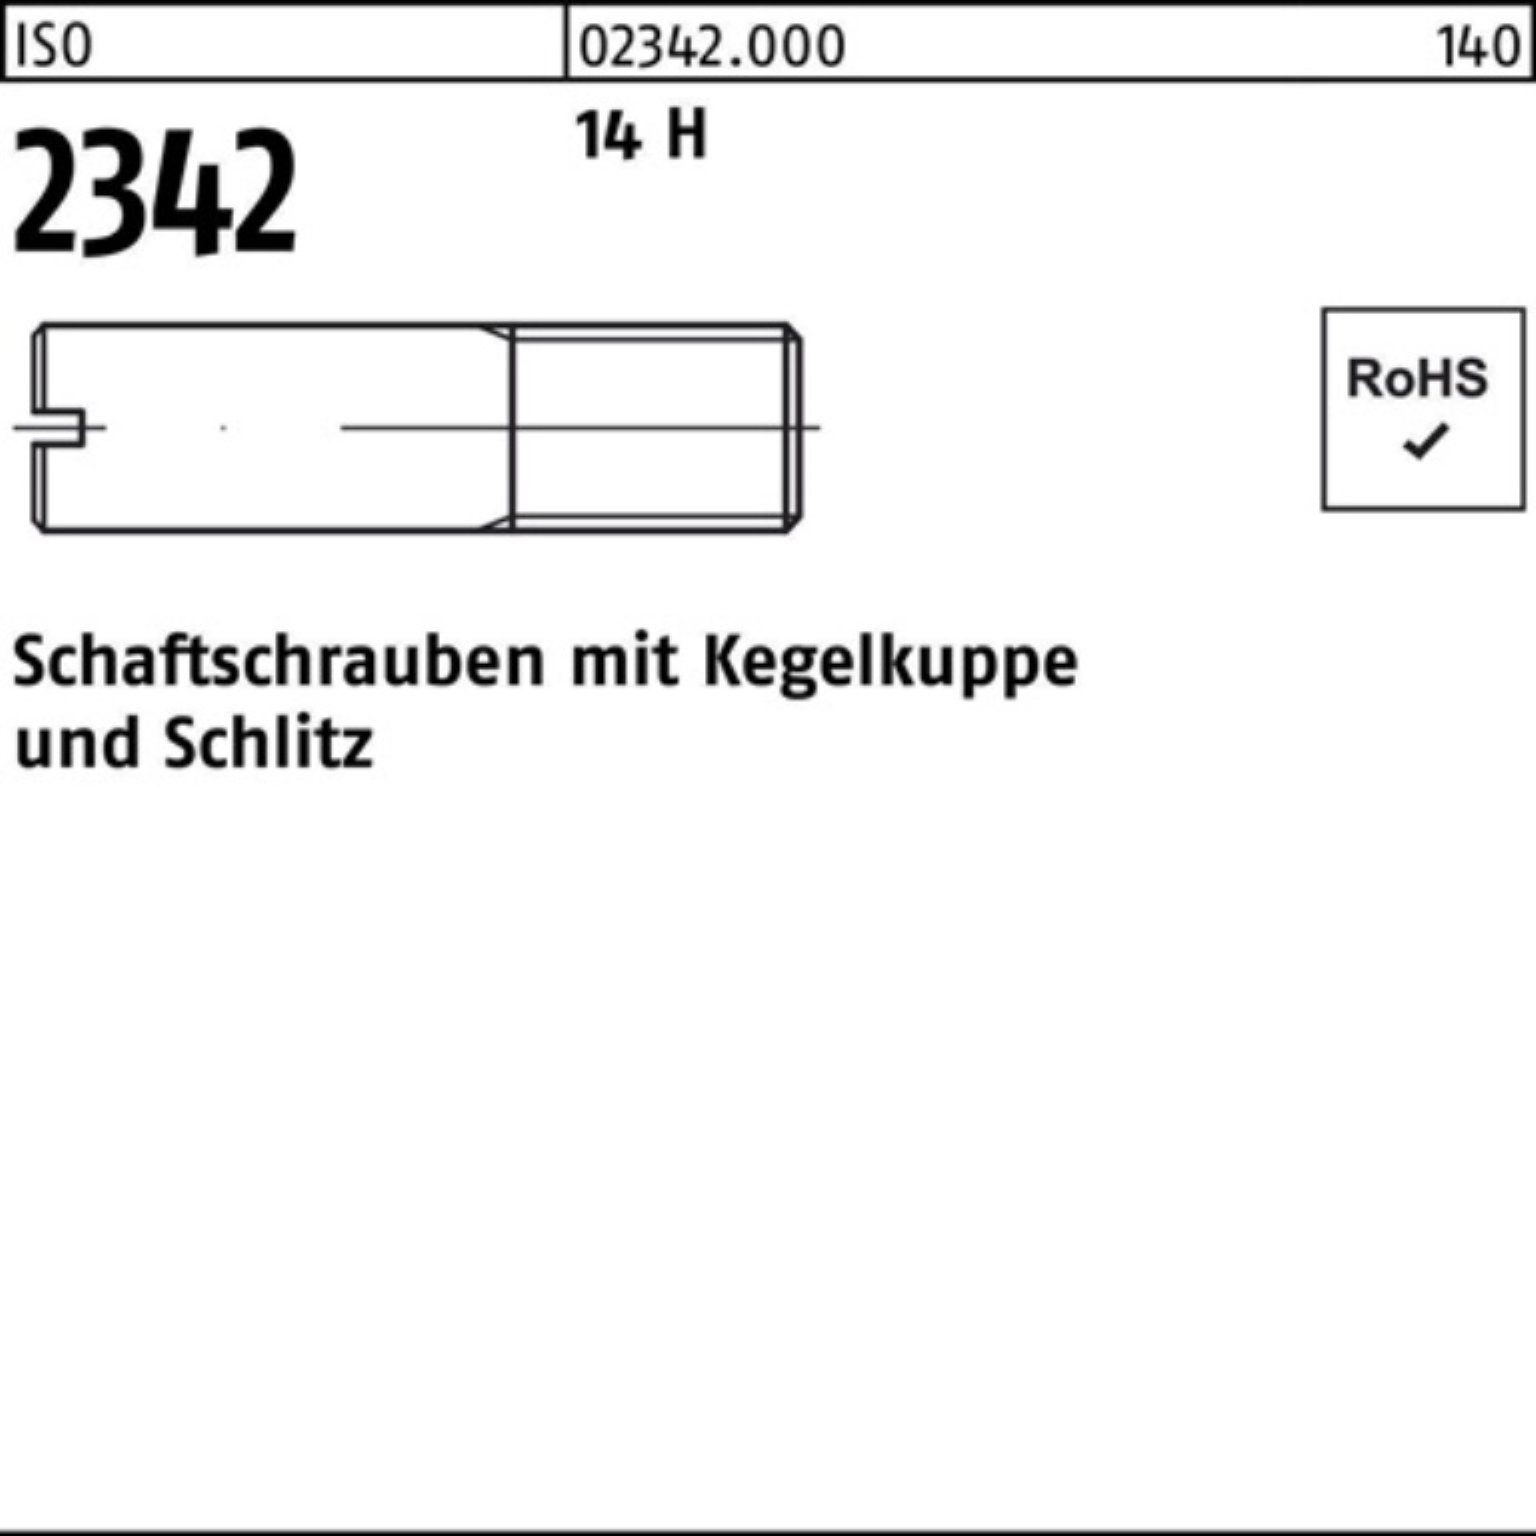 Reyher Schraube 100er Pack Schaftschraube ISO 2342 Kegelkuppe/Schlitz M5x 30 14 H 100